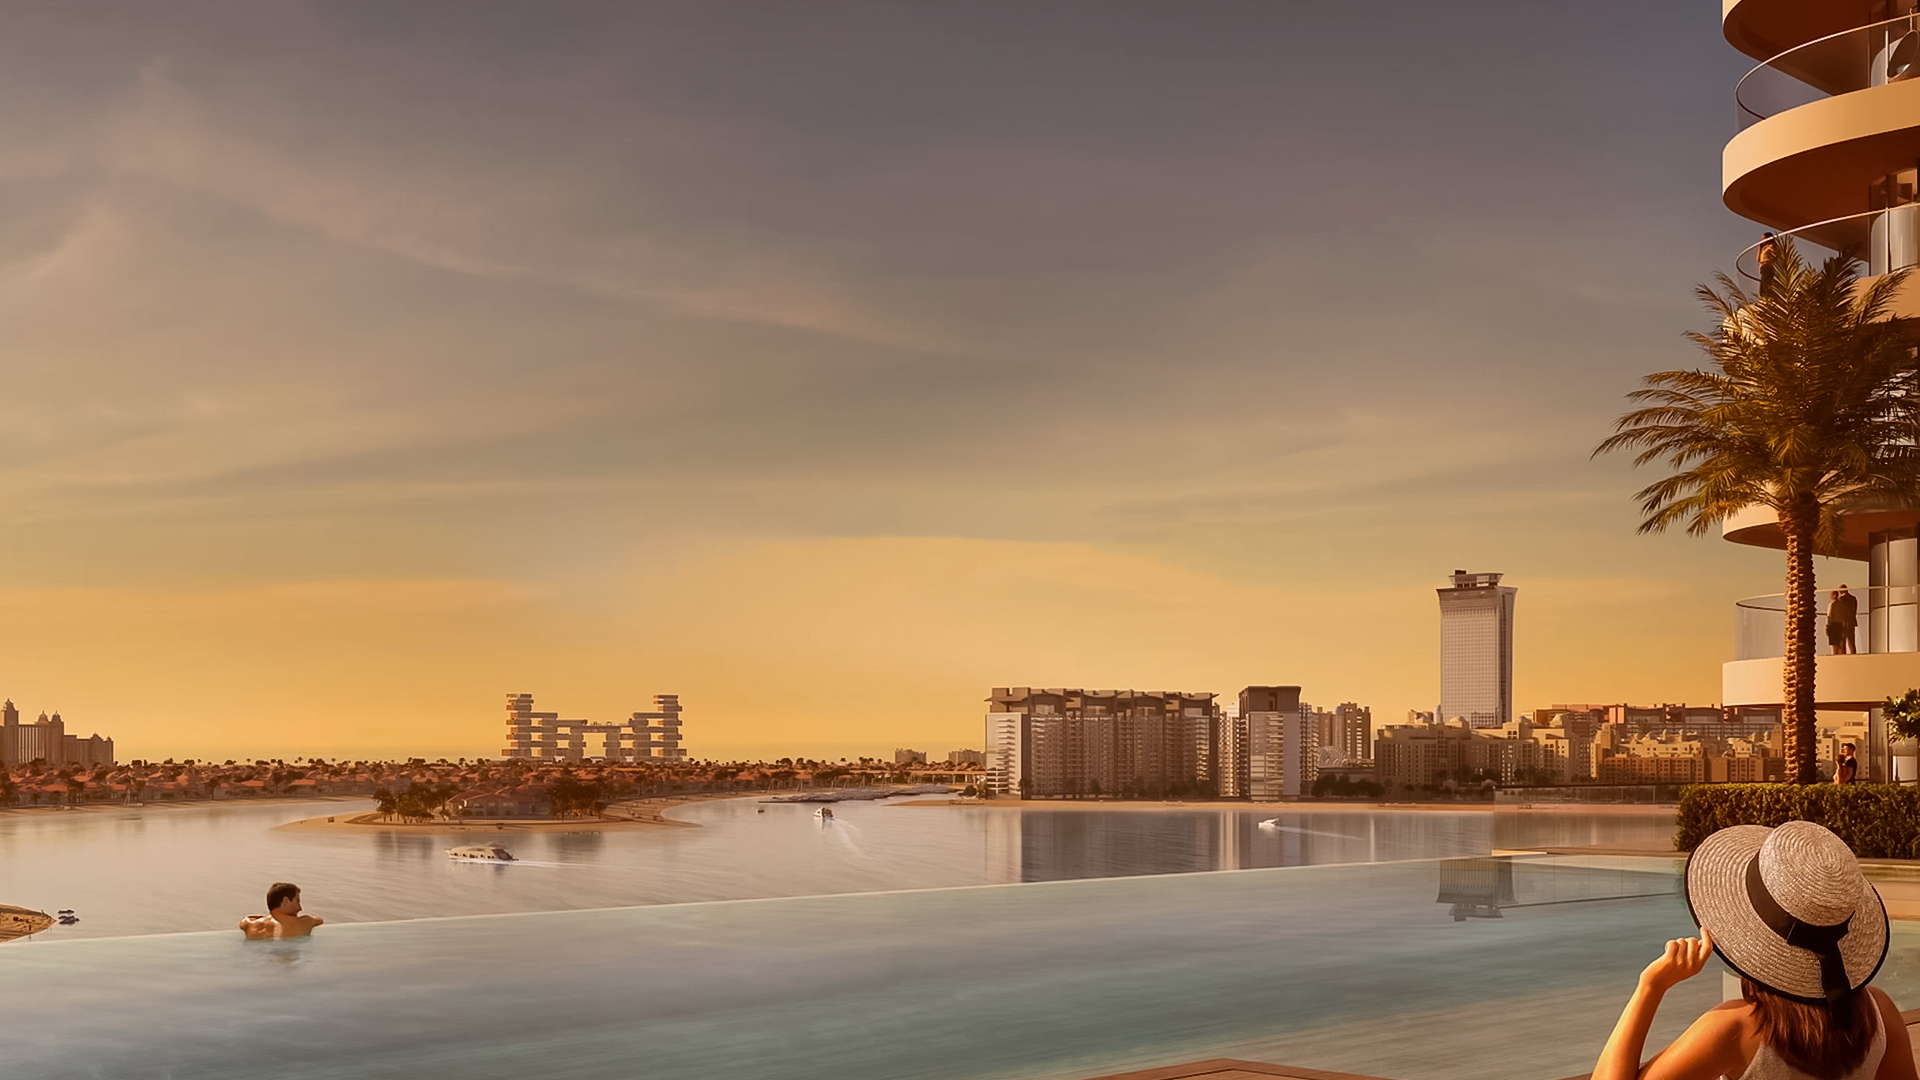 SEAPOINT RESIDENCES by Emaar Properties in Emaar beachfront, Dubai, UAE5